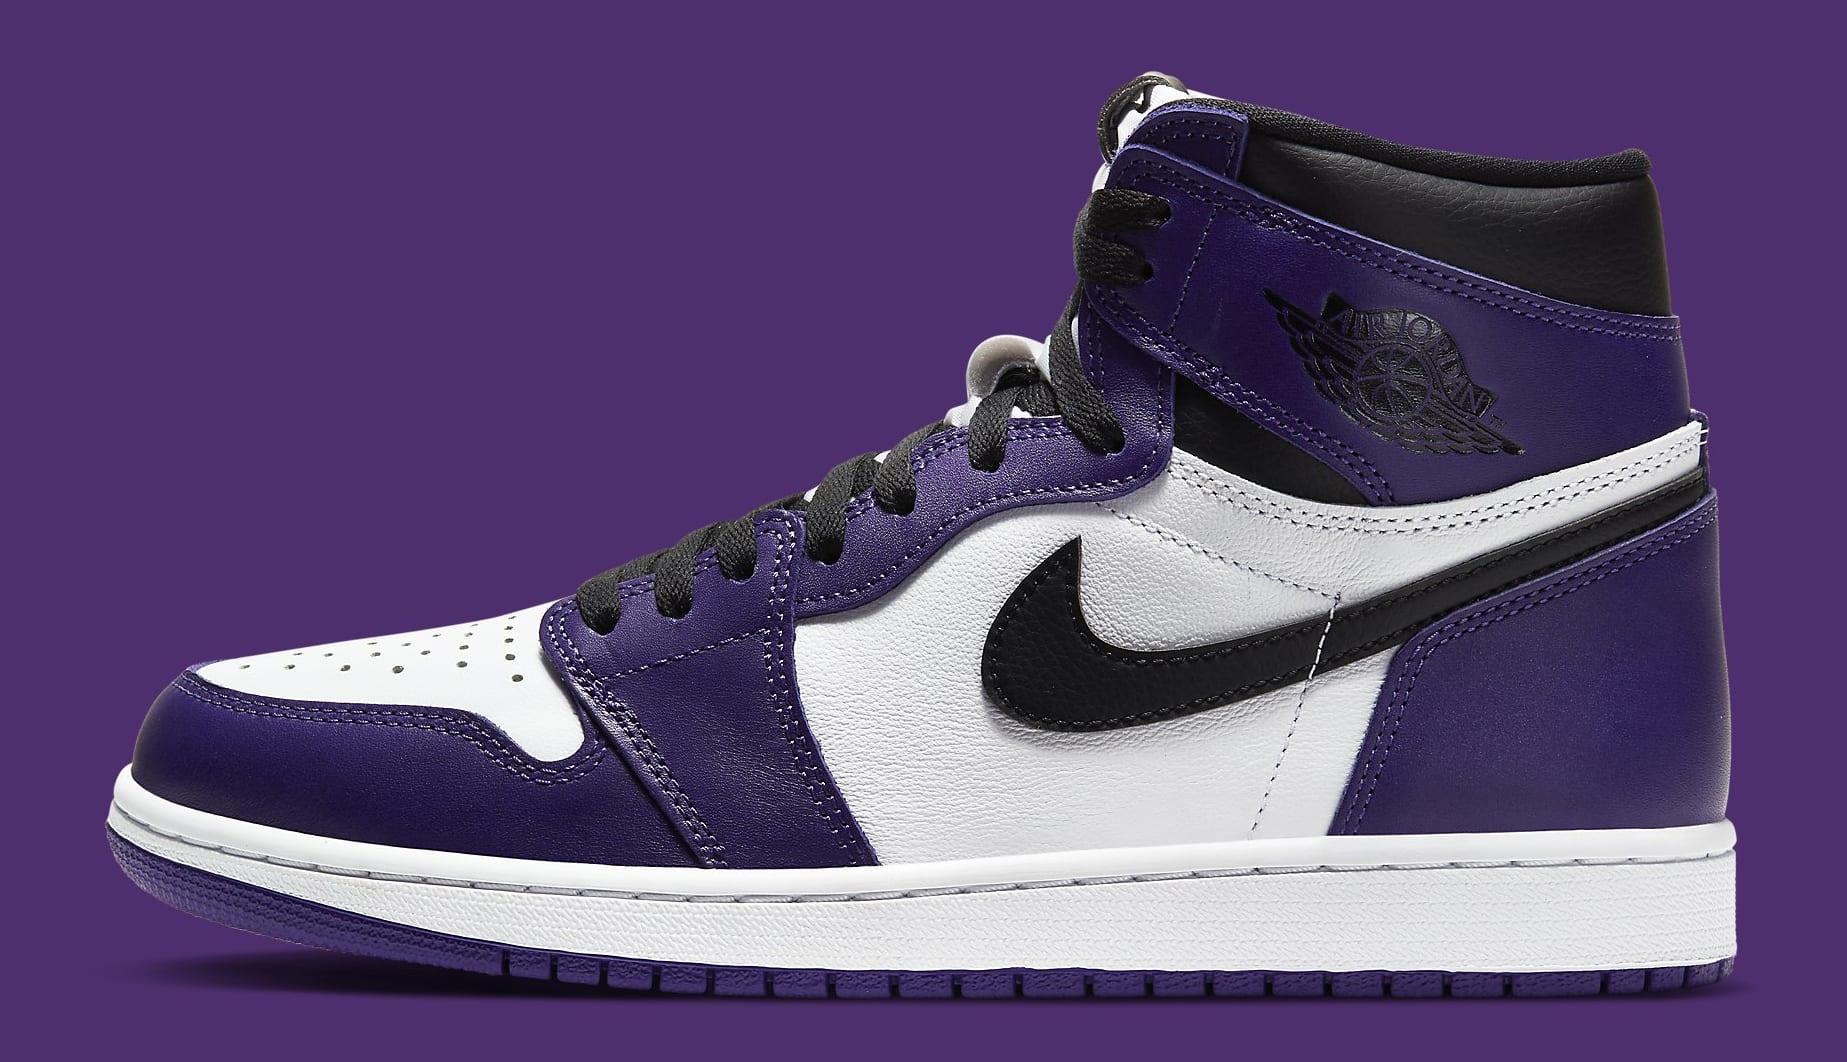 Purple Jordan Wallpapers Top Những Hình Ảnh Đẹp